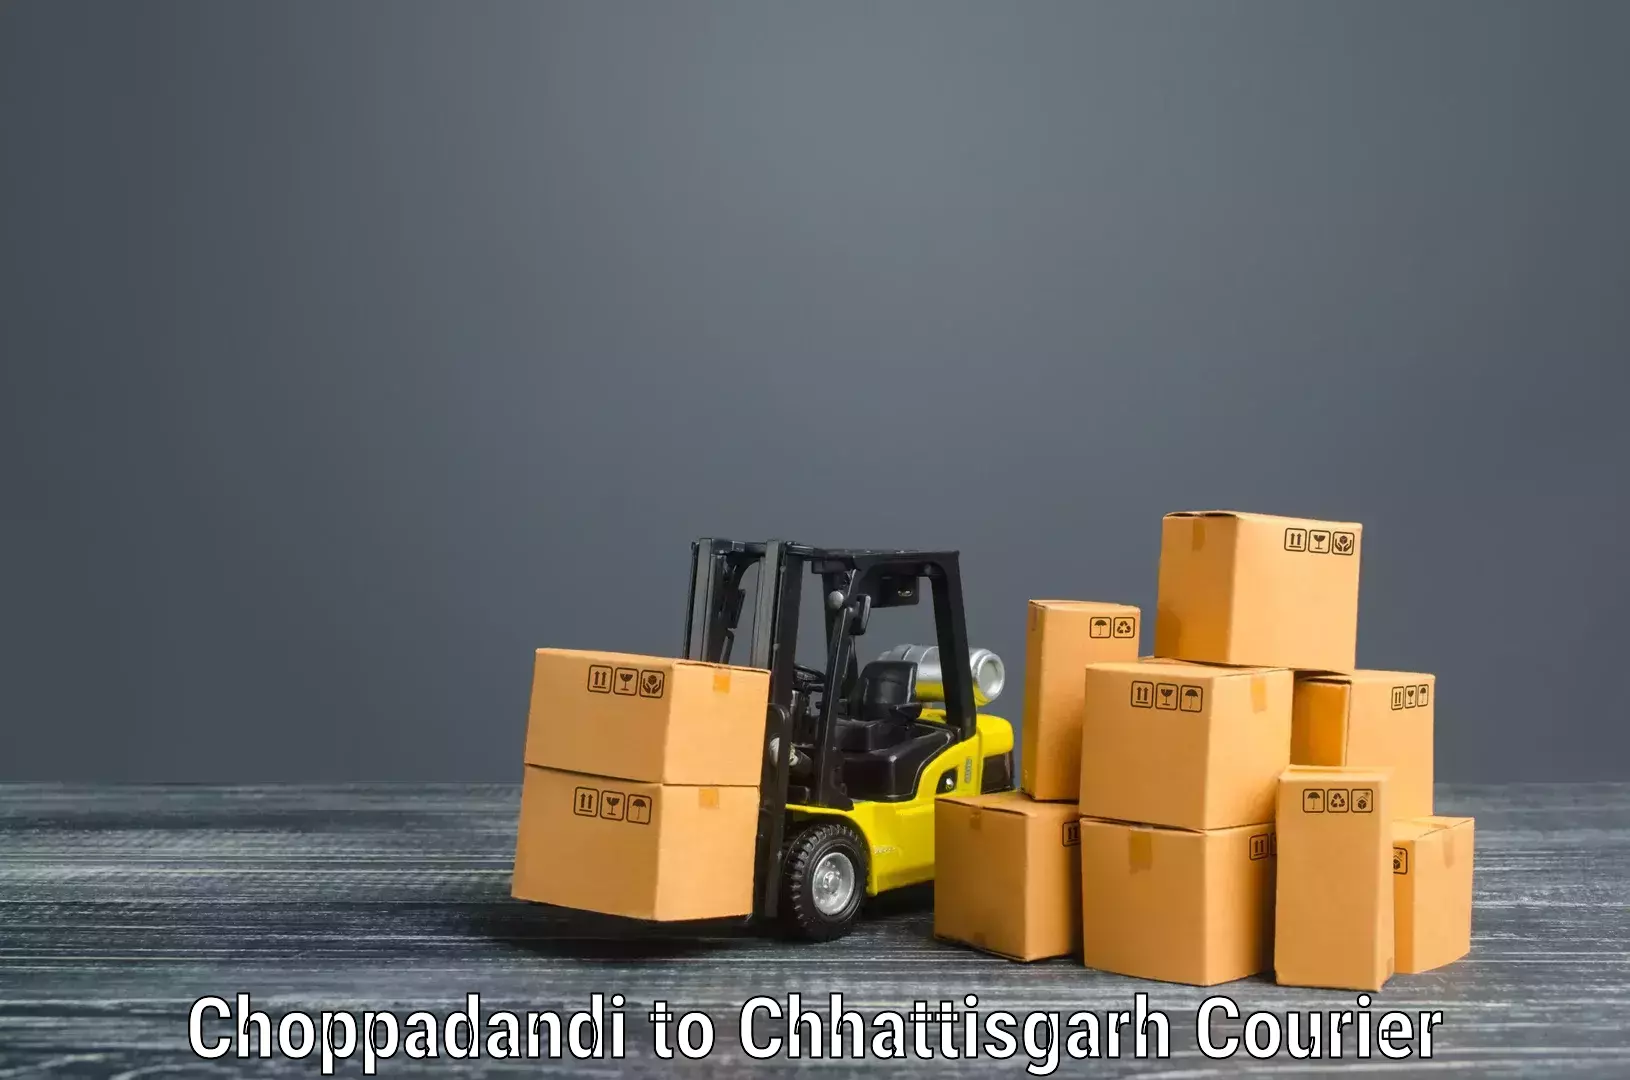 Furniture transport specialists Choppadandi to Jagdalpur